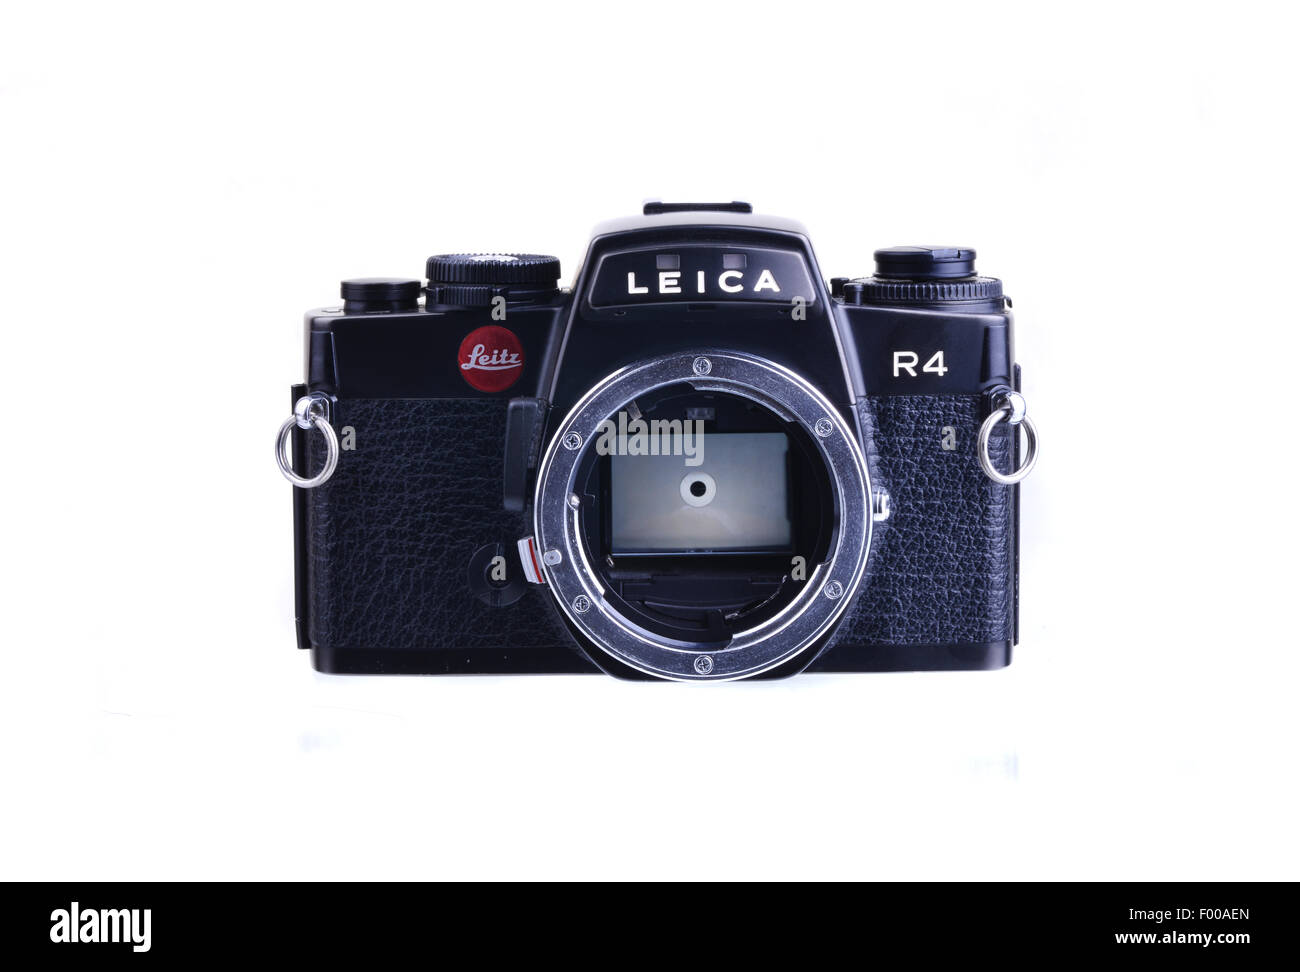 Panamá, Panamá - Julio 30, 2015: Leica R4 fueron las cámaras SLR de 35 mm fabricado por Leica entre 1980 y 1996 Foto de stock